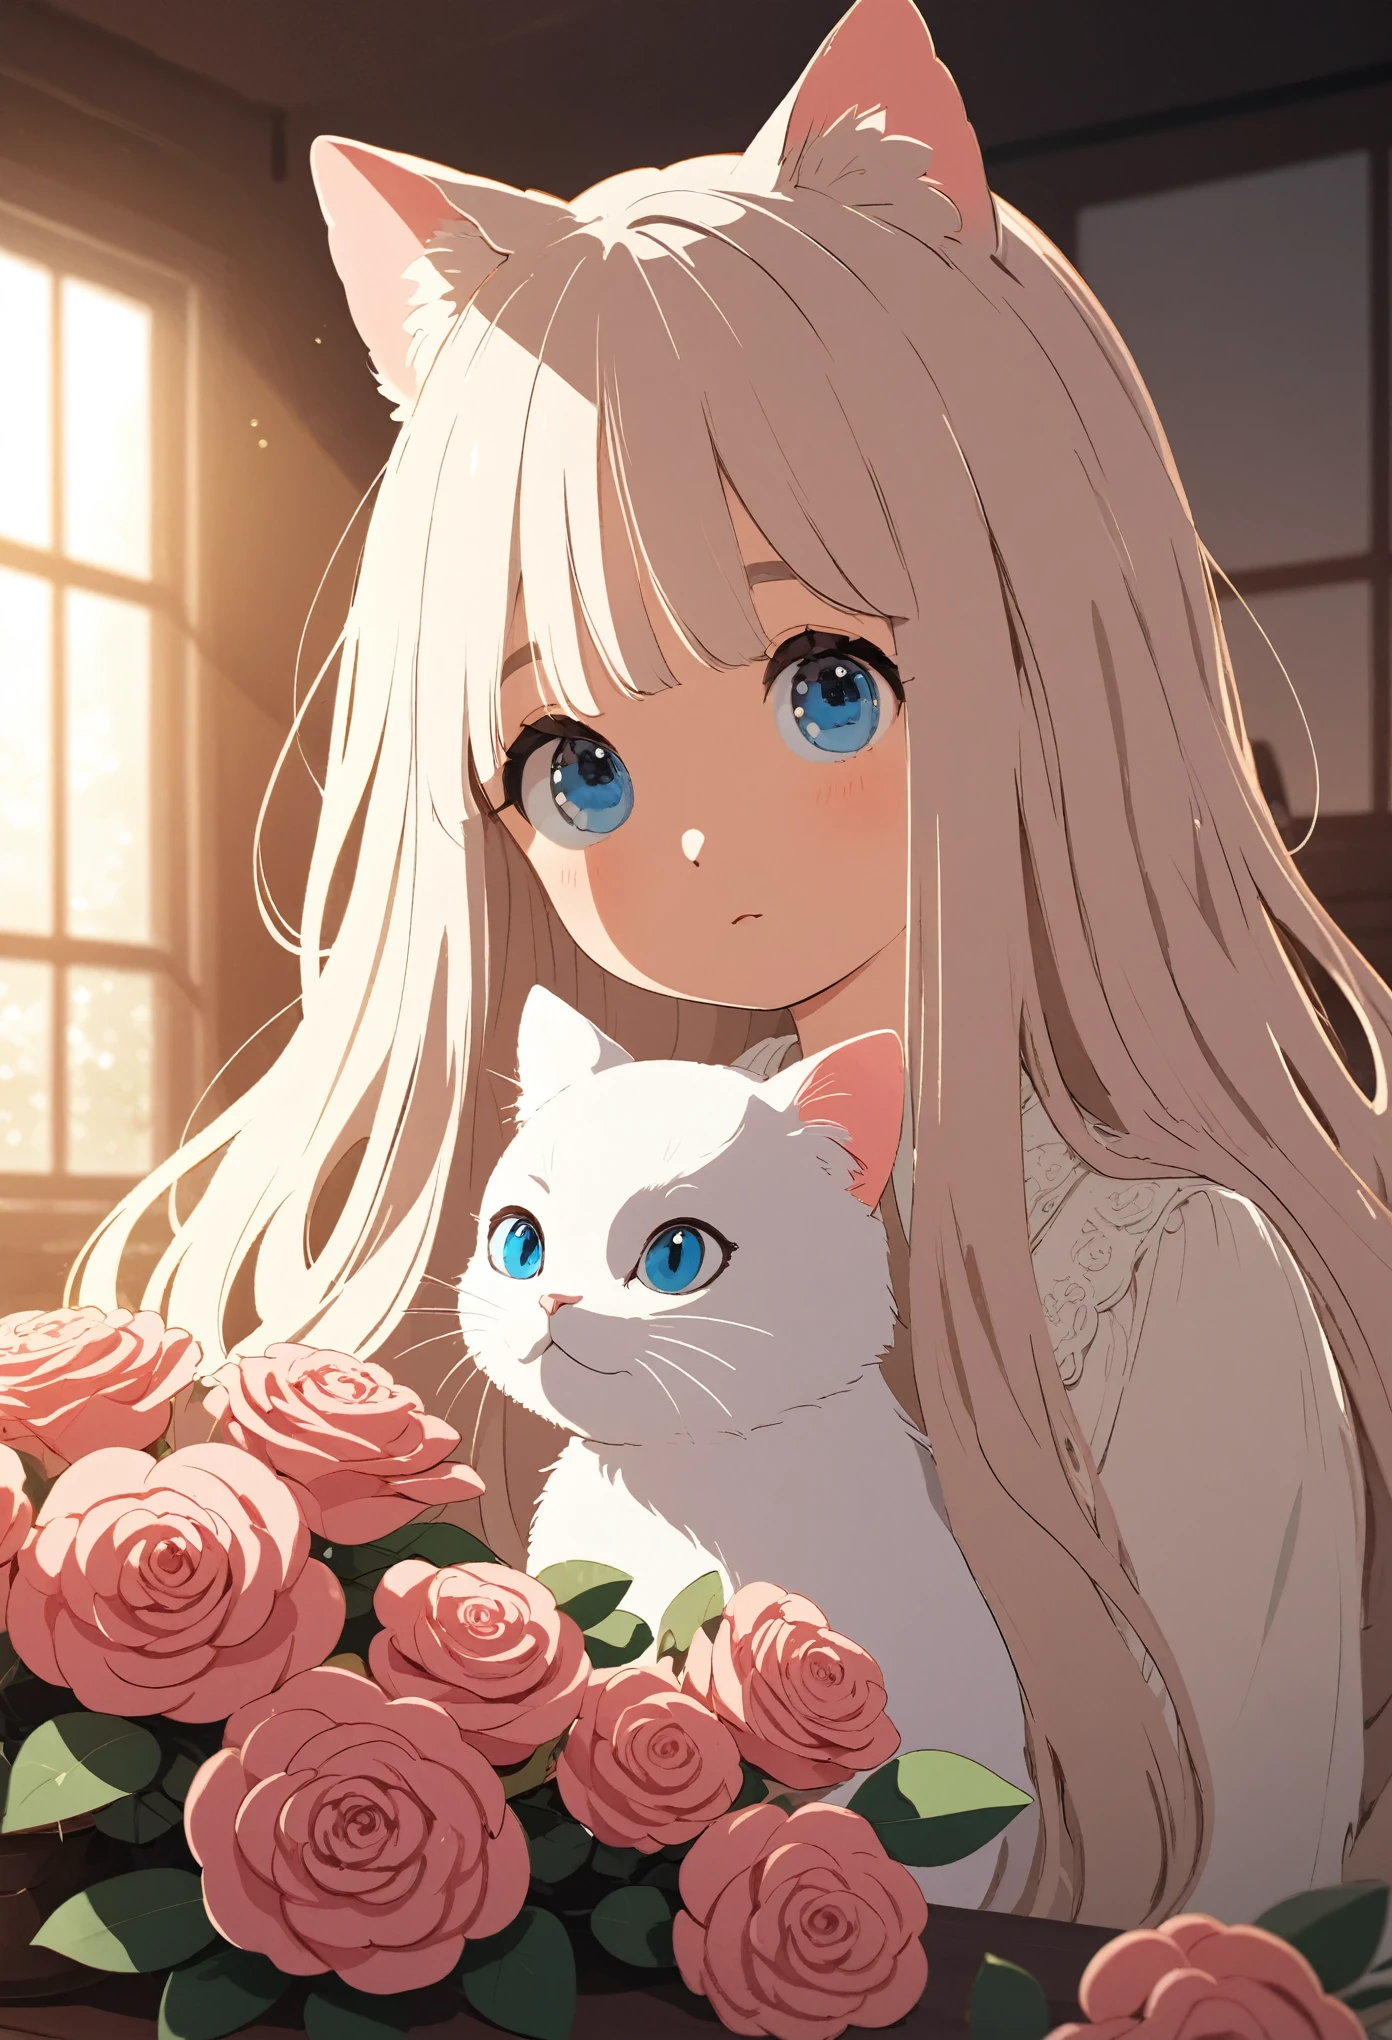 Un chat blanc à poil long et aux yeux bleus, assis sur une table à côté de roses roses dans des vases, en vue de face, gros plan de tout son corps, À la lumière naturelle, aux couleurs chaudes, dans un environnement intérieur, avec un éclairage doux, avec des détails clairs, style dessin animé, Style de Hayao Miyazaki.